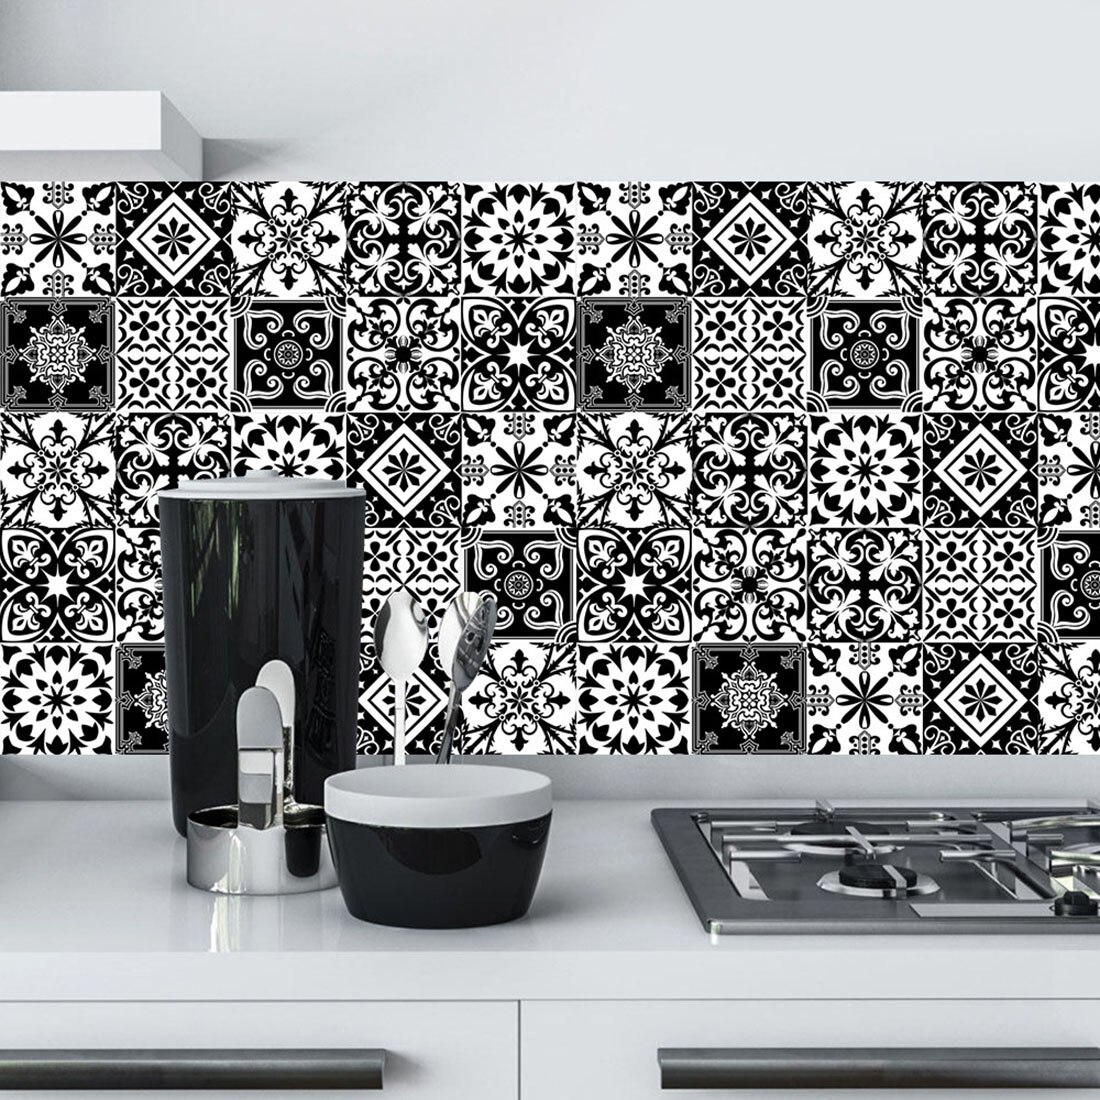 Moderne flise klistermærker selvklæbende væg mosaik tapet vandtætte klistermærker til badeværelse diy væg klistermærker køkken vægindretning